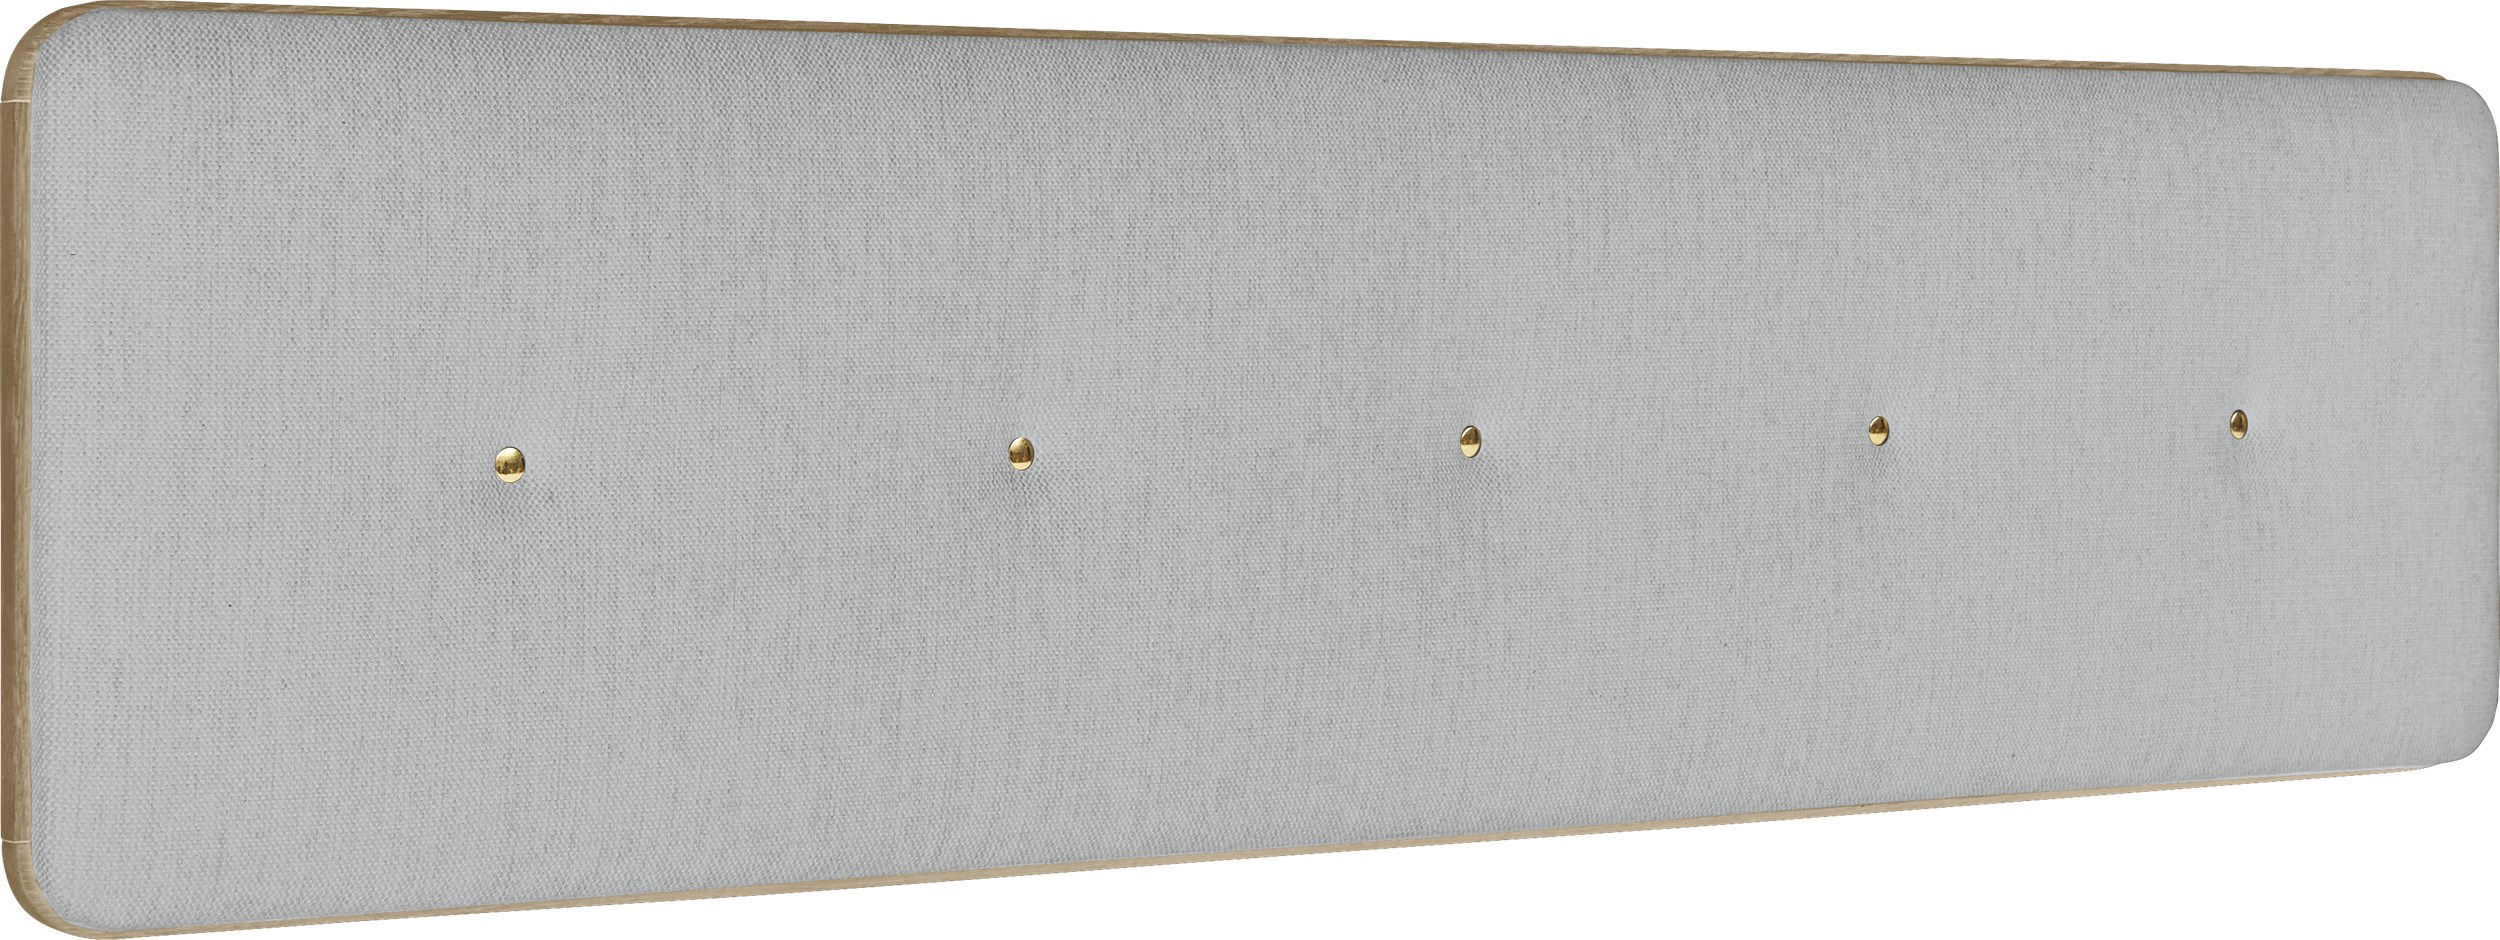 Match Small Sänggavel 180 x 45 x 6 cm - Light grey och ram i mattlackerat ekfaner